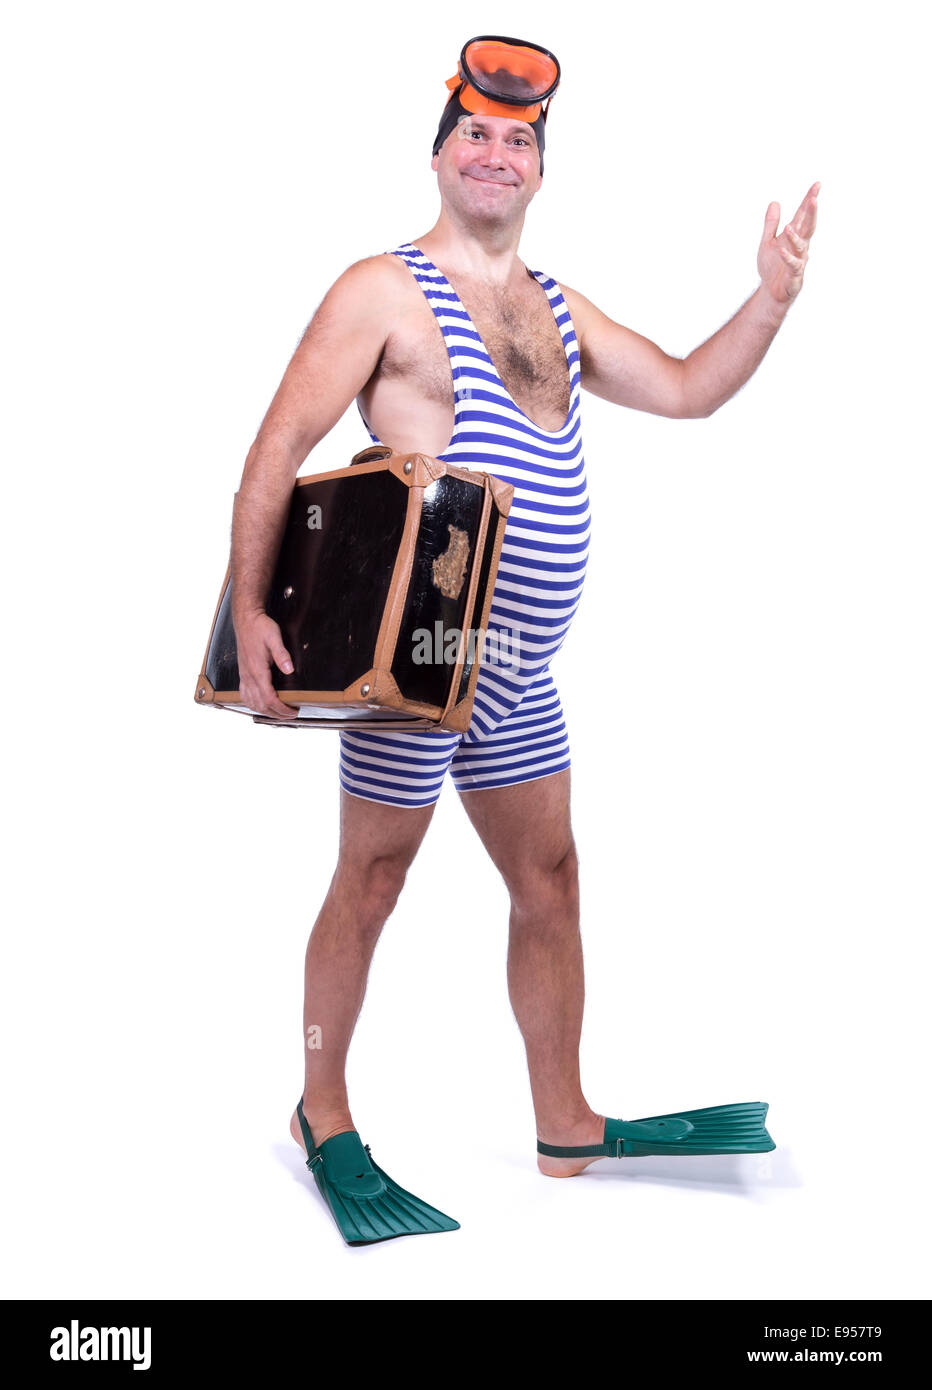 Uomo in abito di nuotare a piedi con la valigia Foto Stock